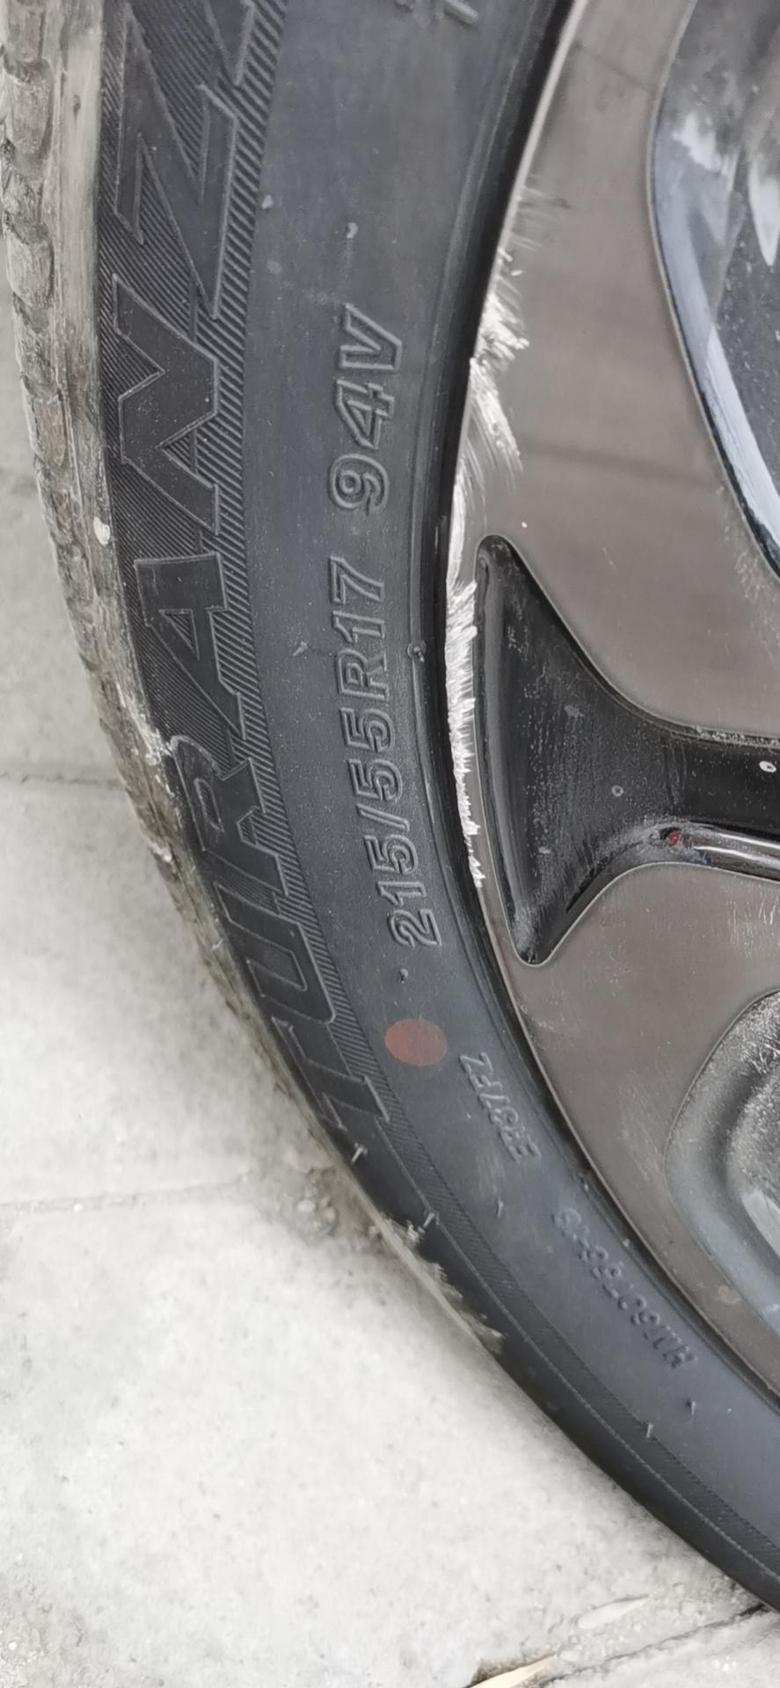 本田xr v 2019年的车，四个轮毂边缘已经都刮花了，前两天右前轮毂边缘还磕了一块，轮胎也换了一条，这个轮毂需要更换或修补吗？轮毂修复一般多少钱啊？